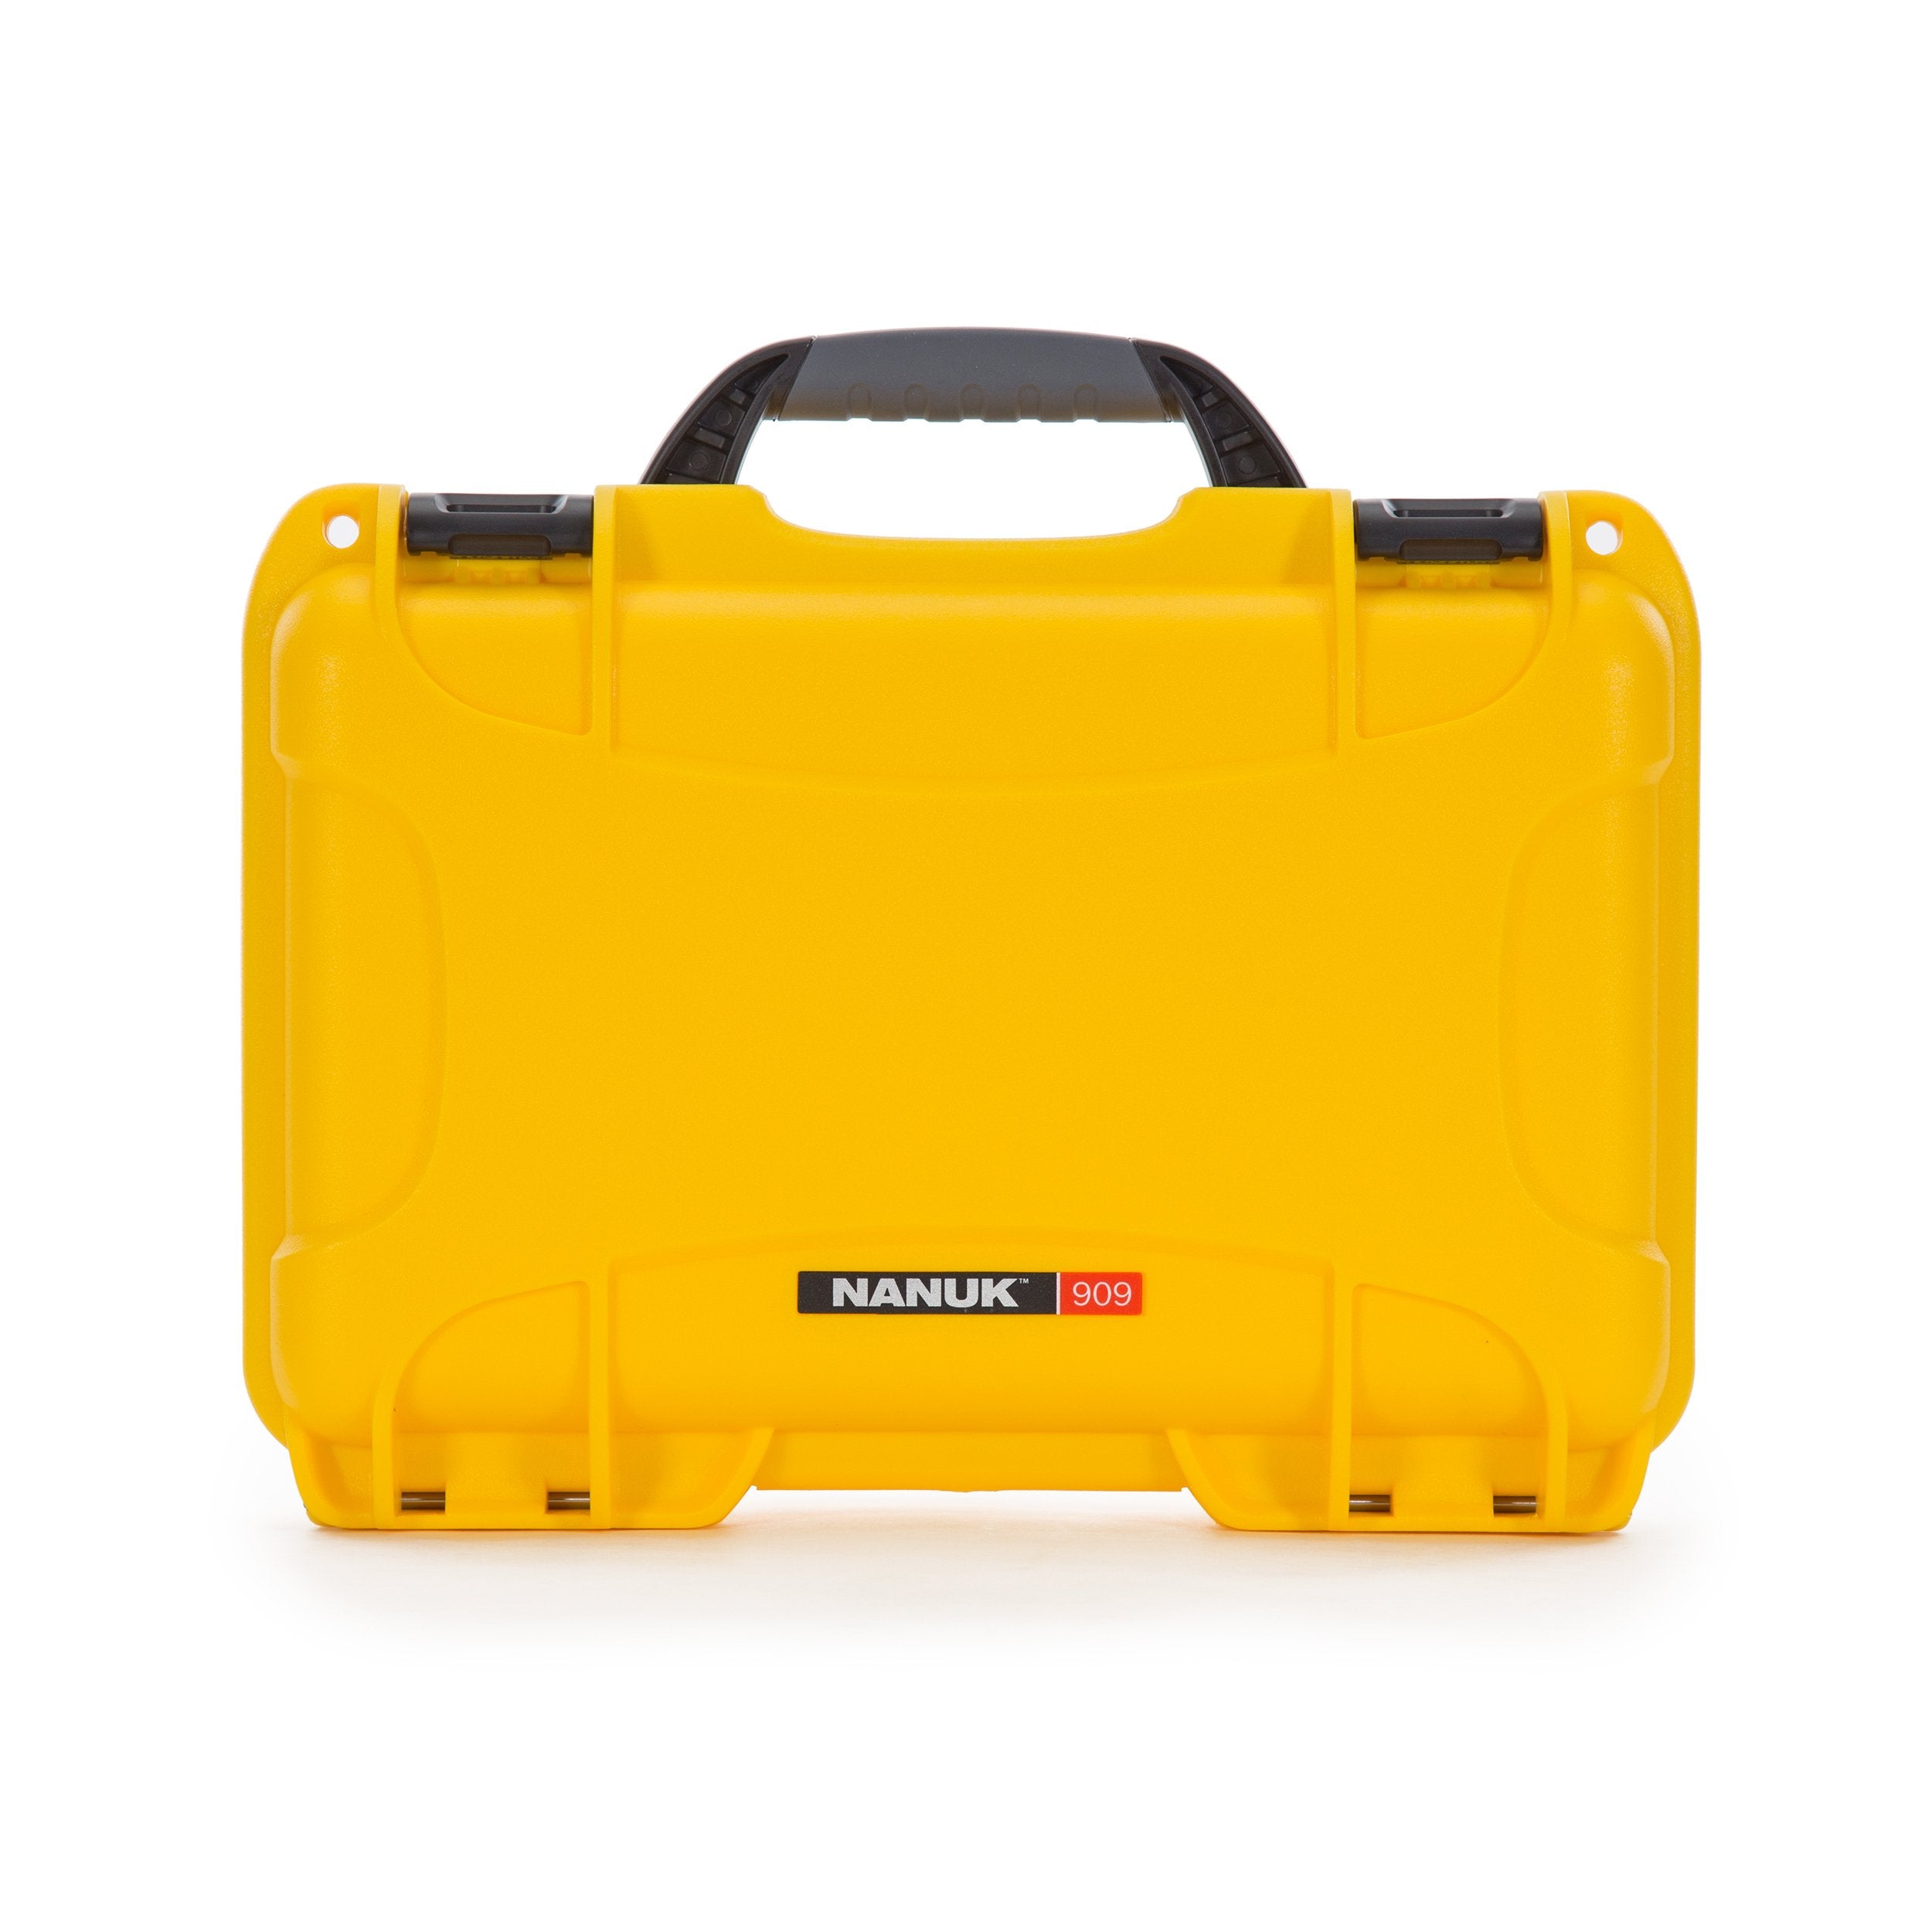 nanuk 905 waterproof hard drone case with custom foam insert for dji spark yellow